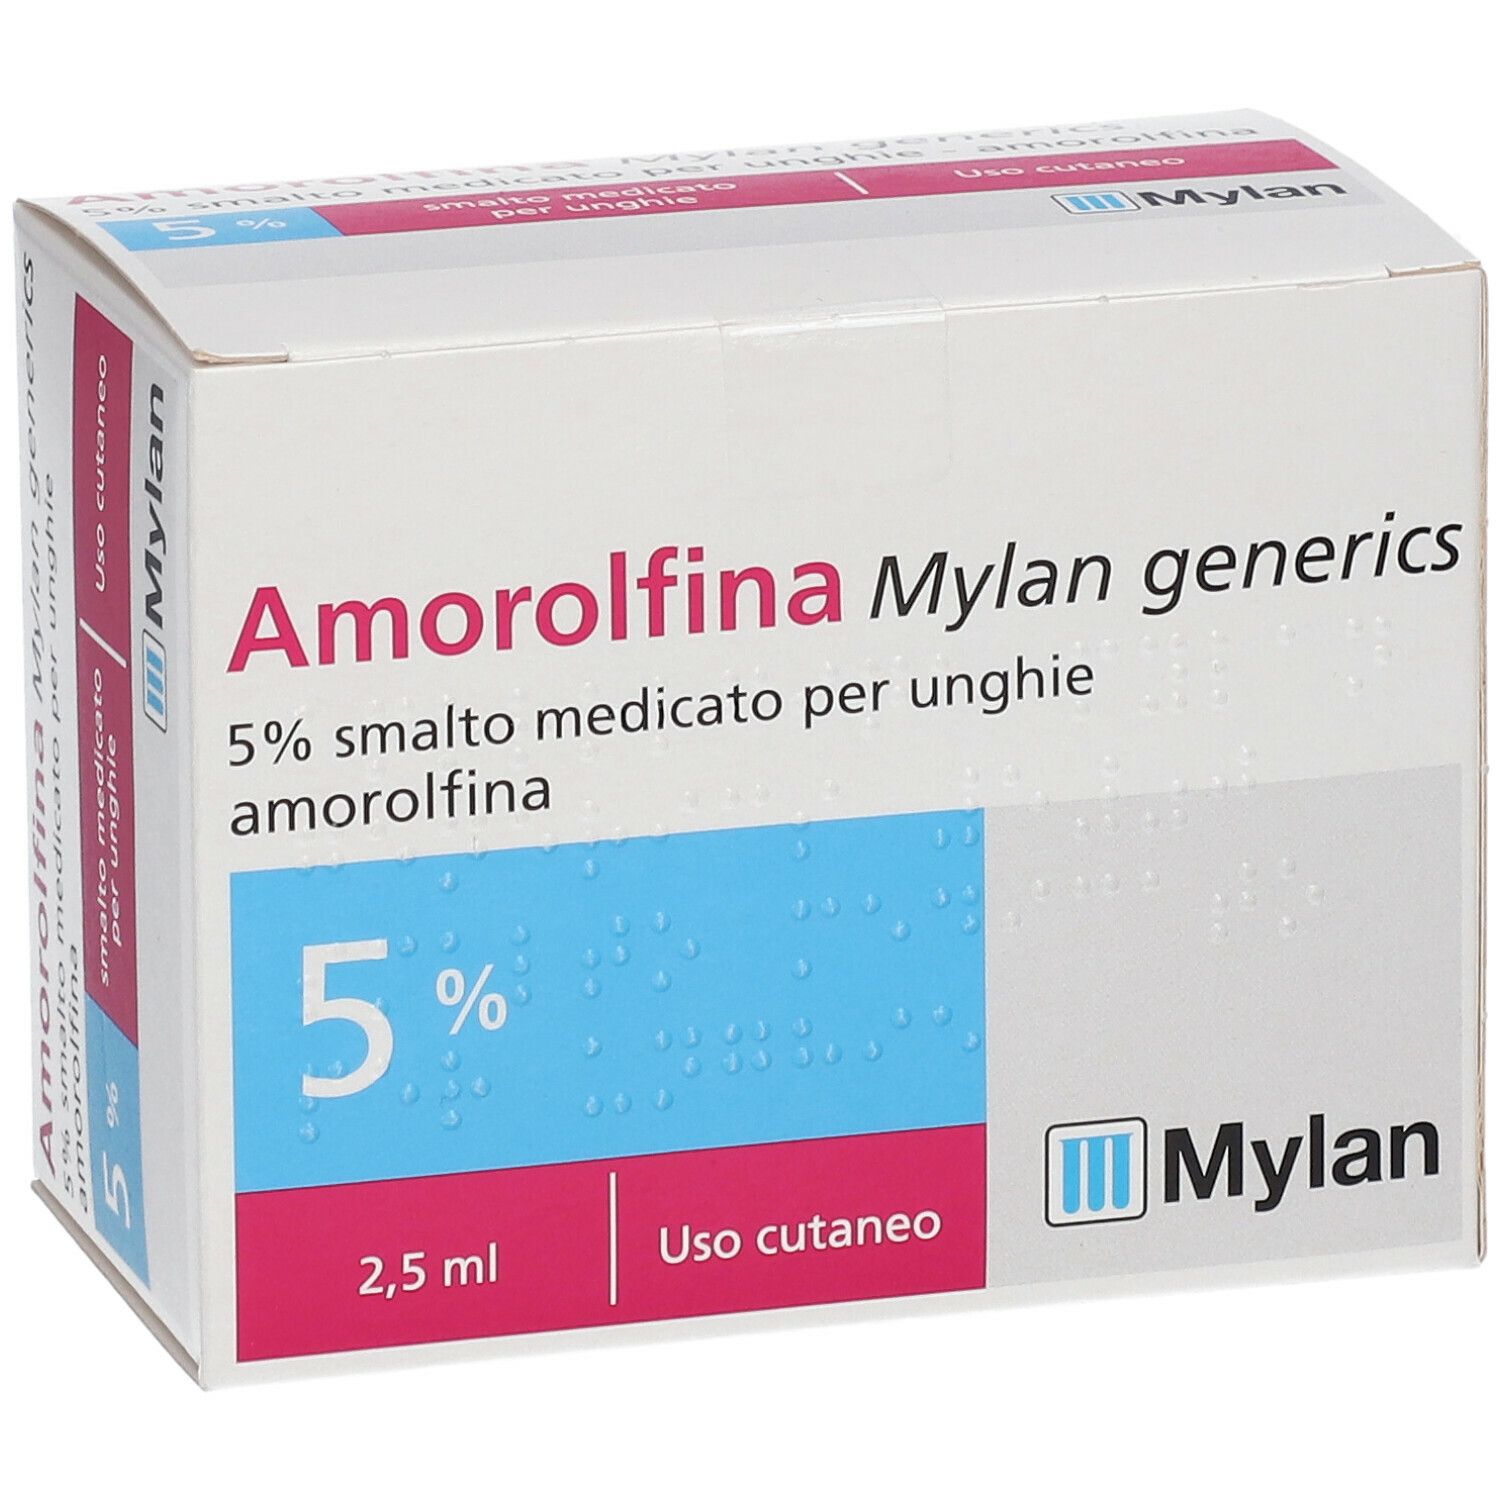 Amorolfina Mylan generics Smalto